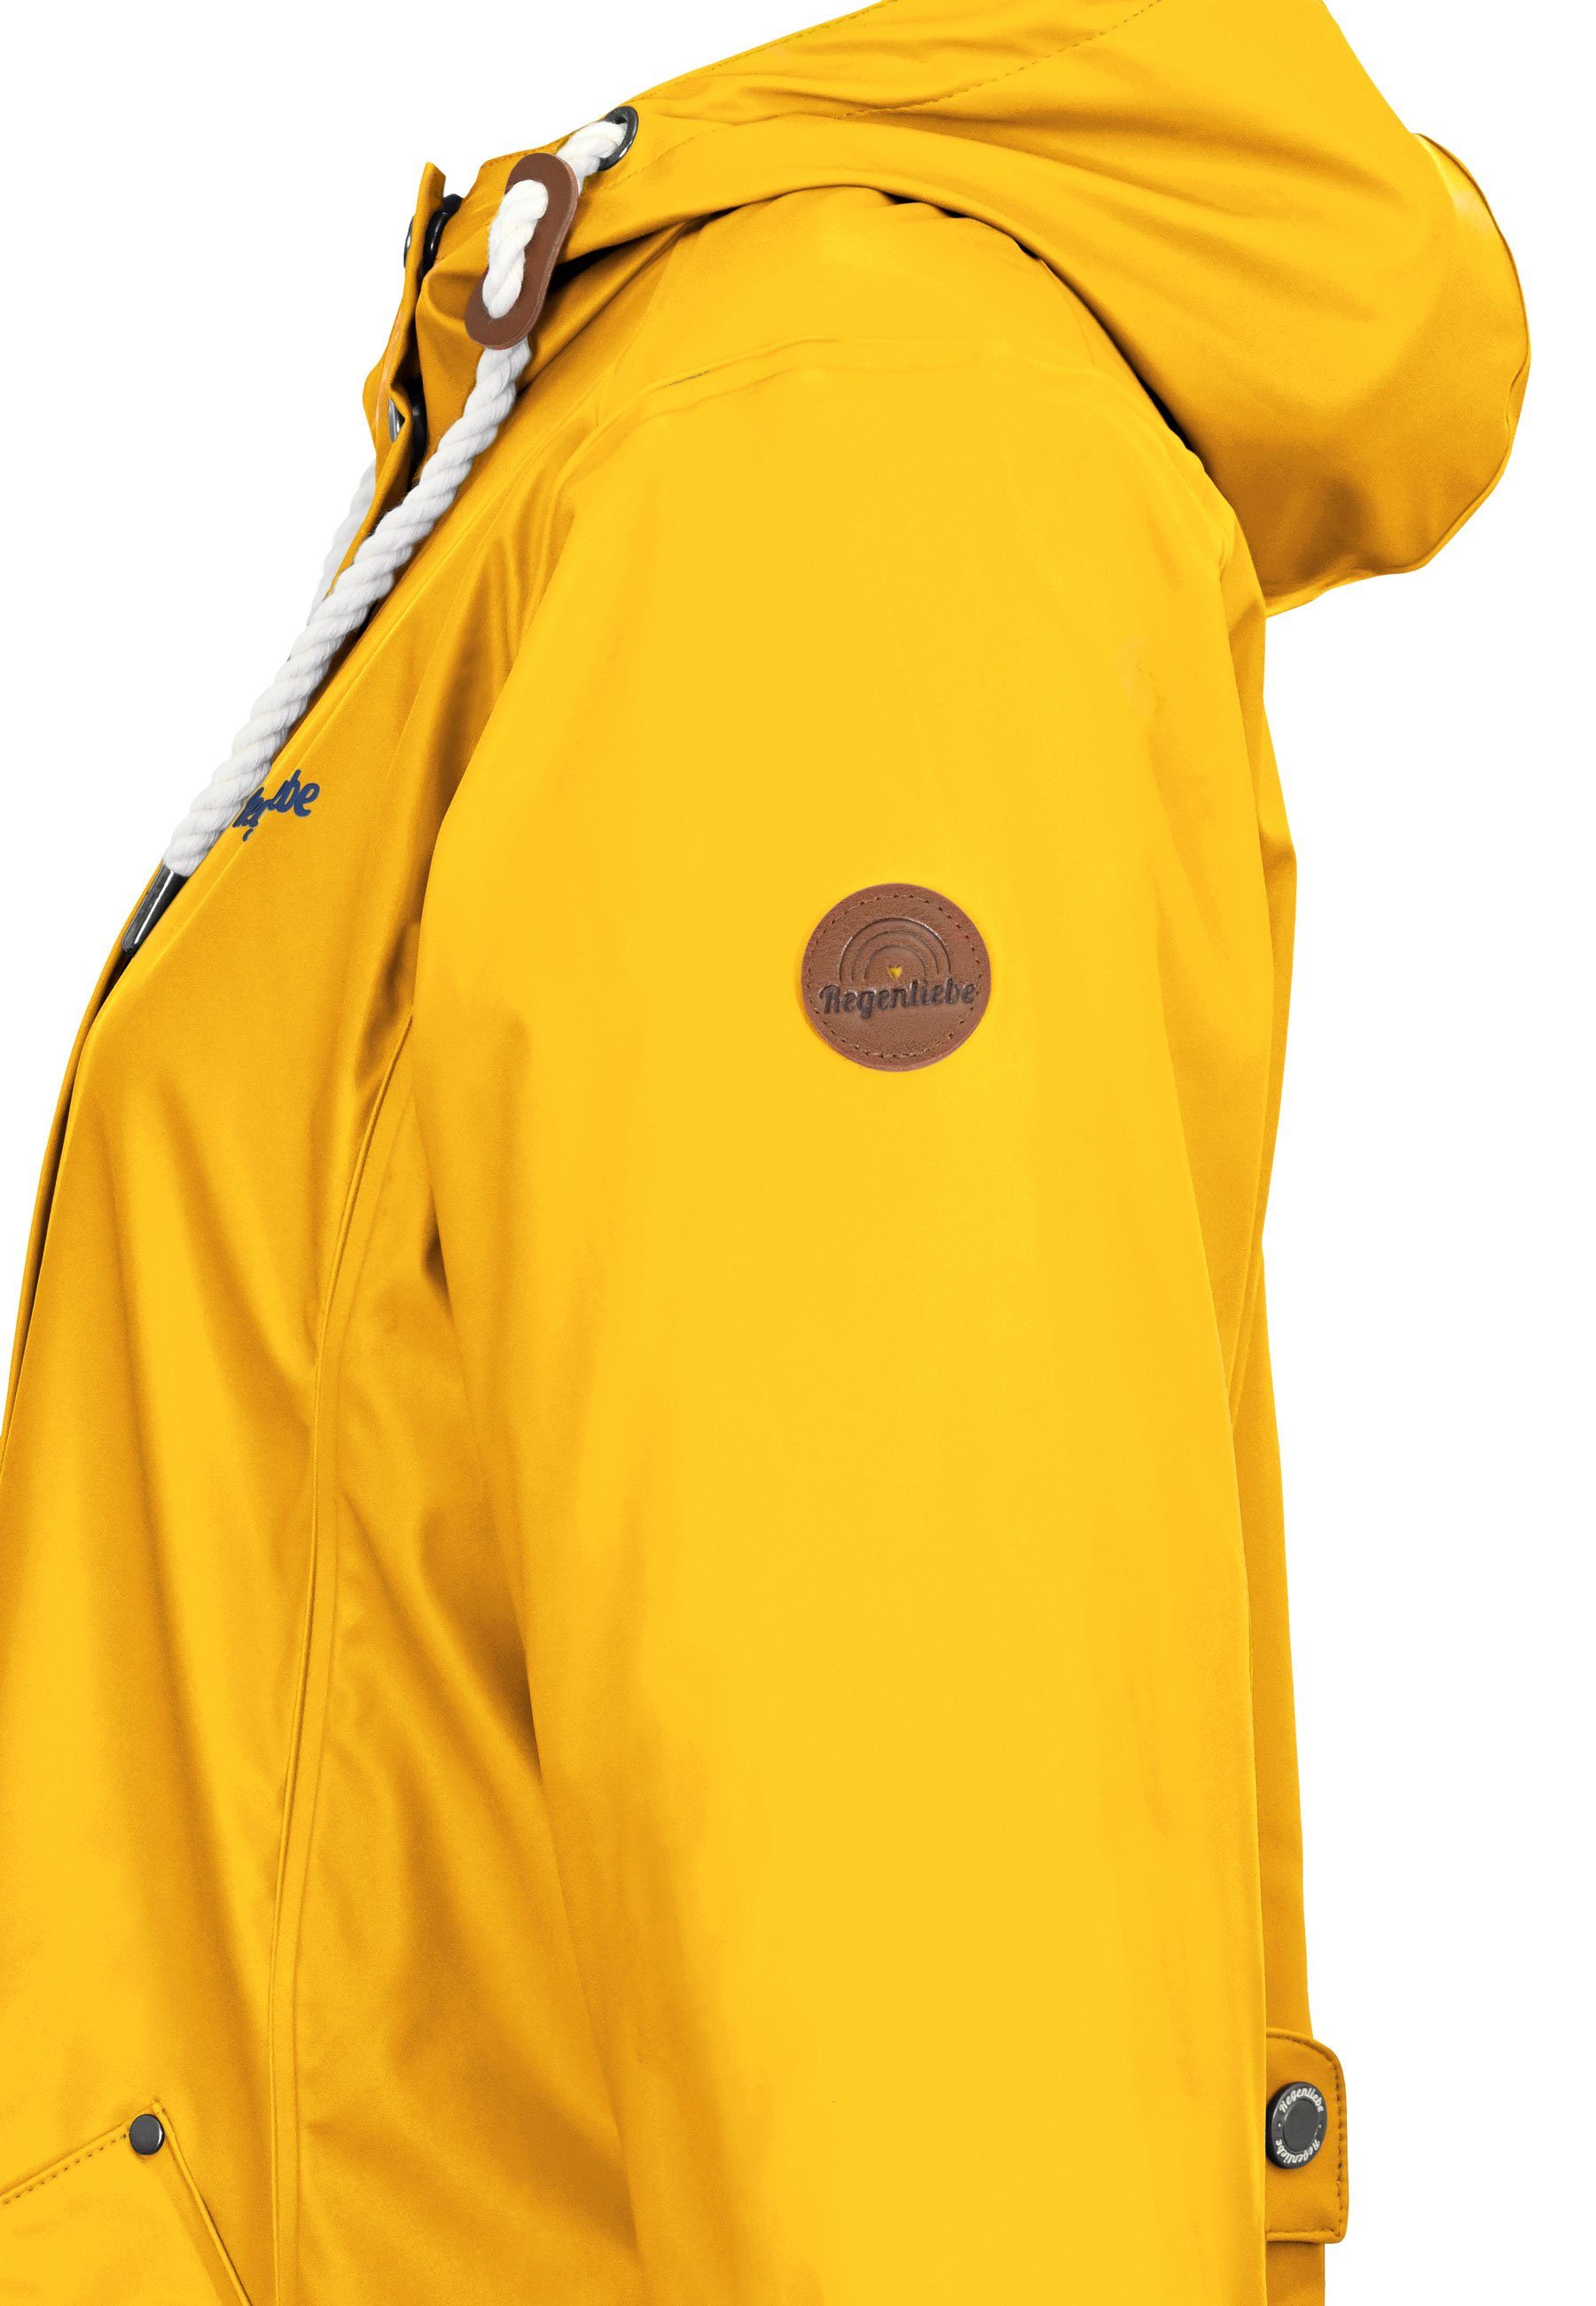 gelb Regenmantel Friesennerz verstellbaren Kapuze Regenjacke mit Regenliebe taillierter